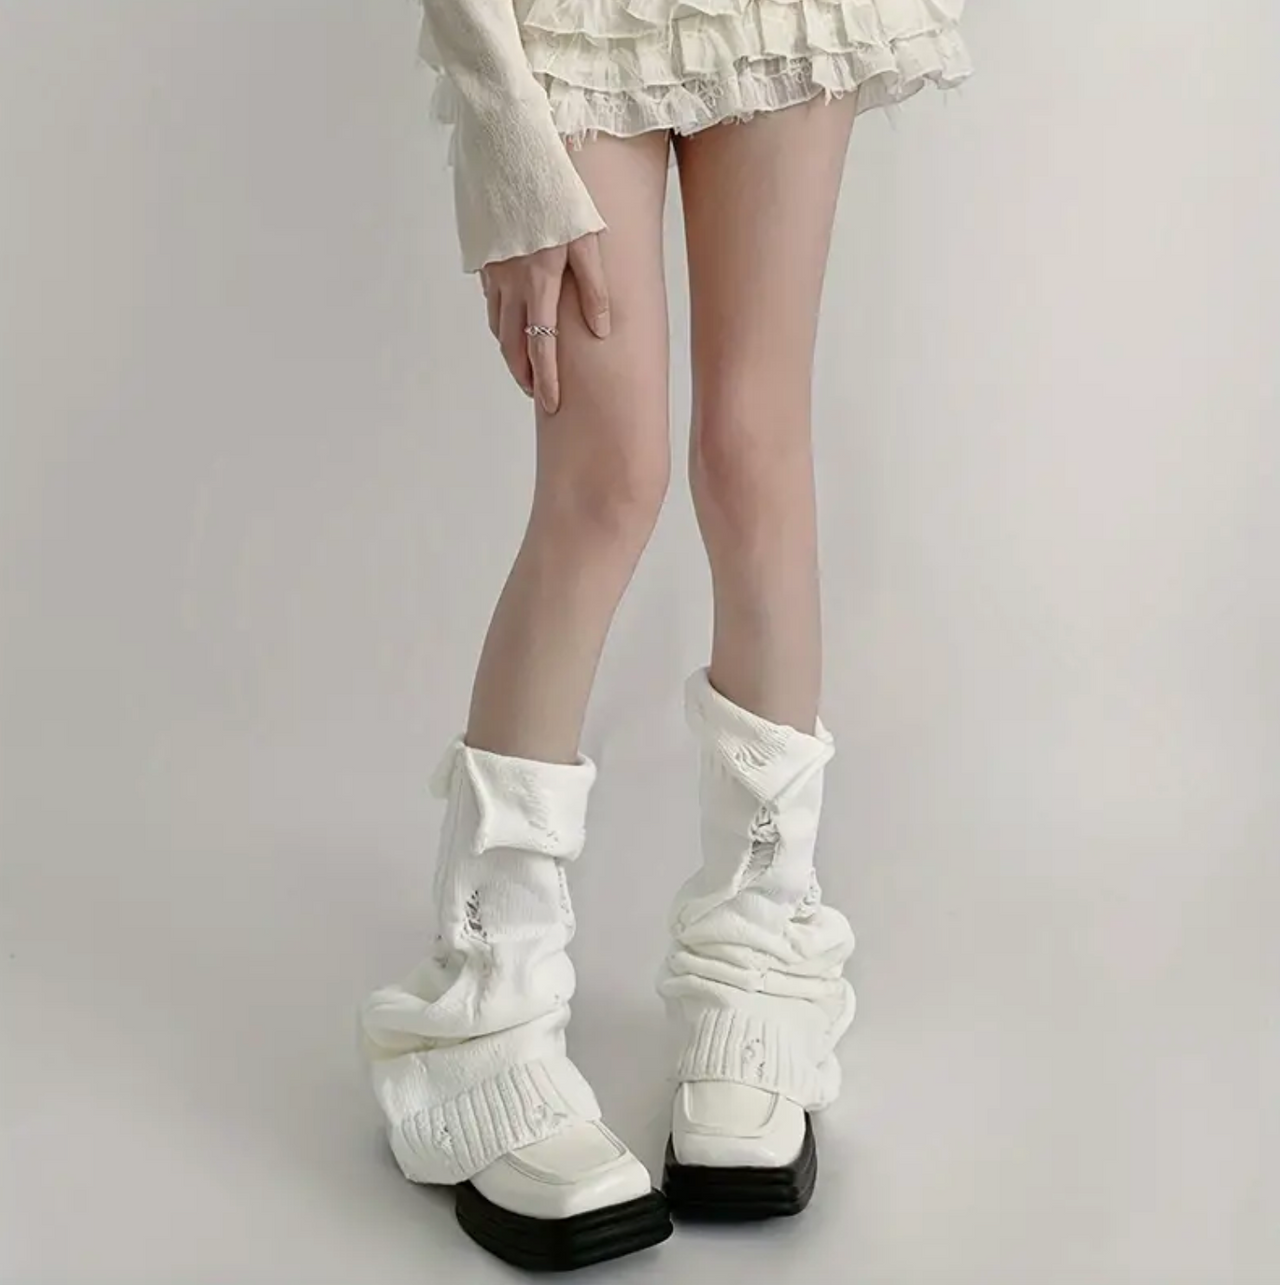 🌲 Early Christmas Sale - SAVE OFF 60% 🎁 Lolita Charm Leg Warmer Socks